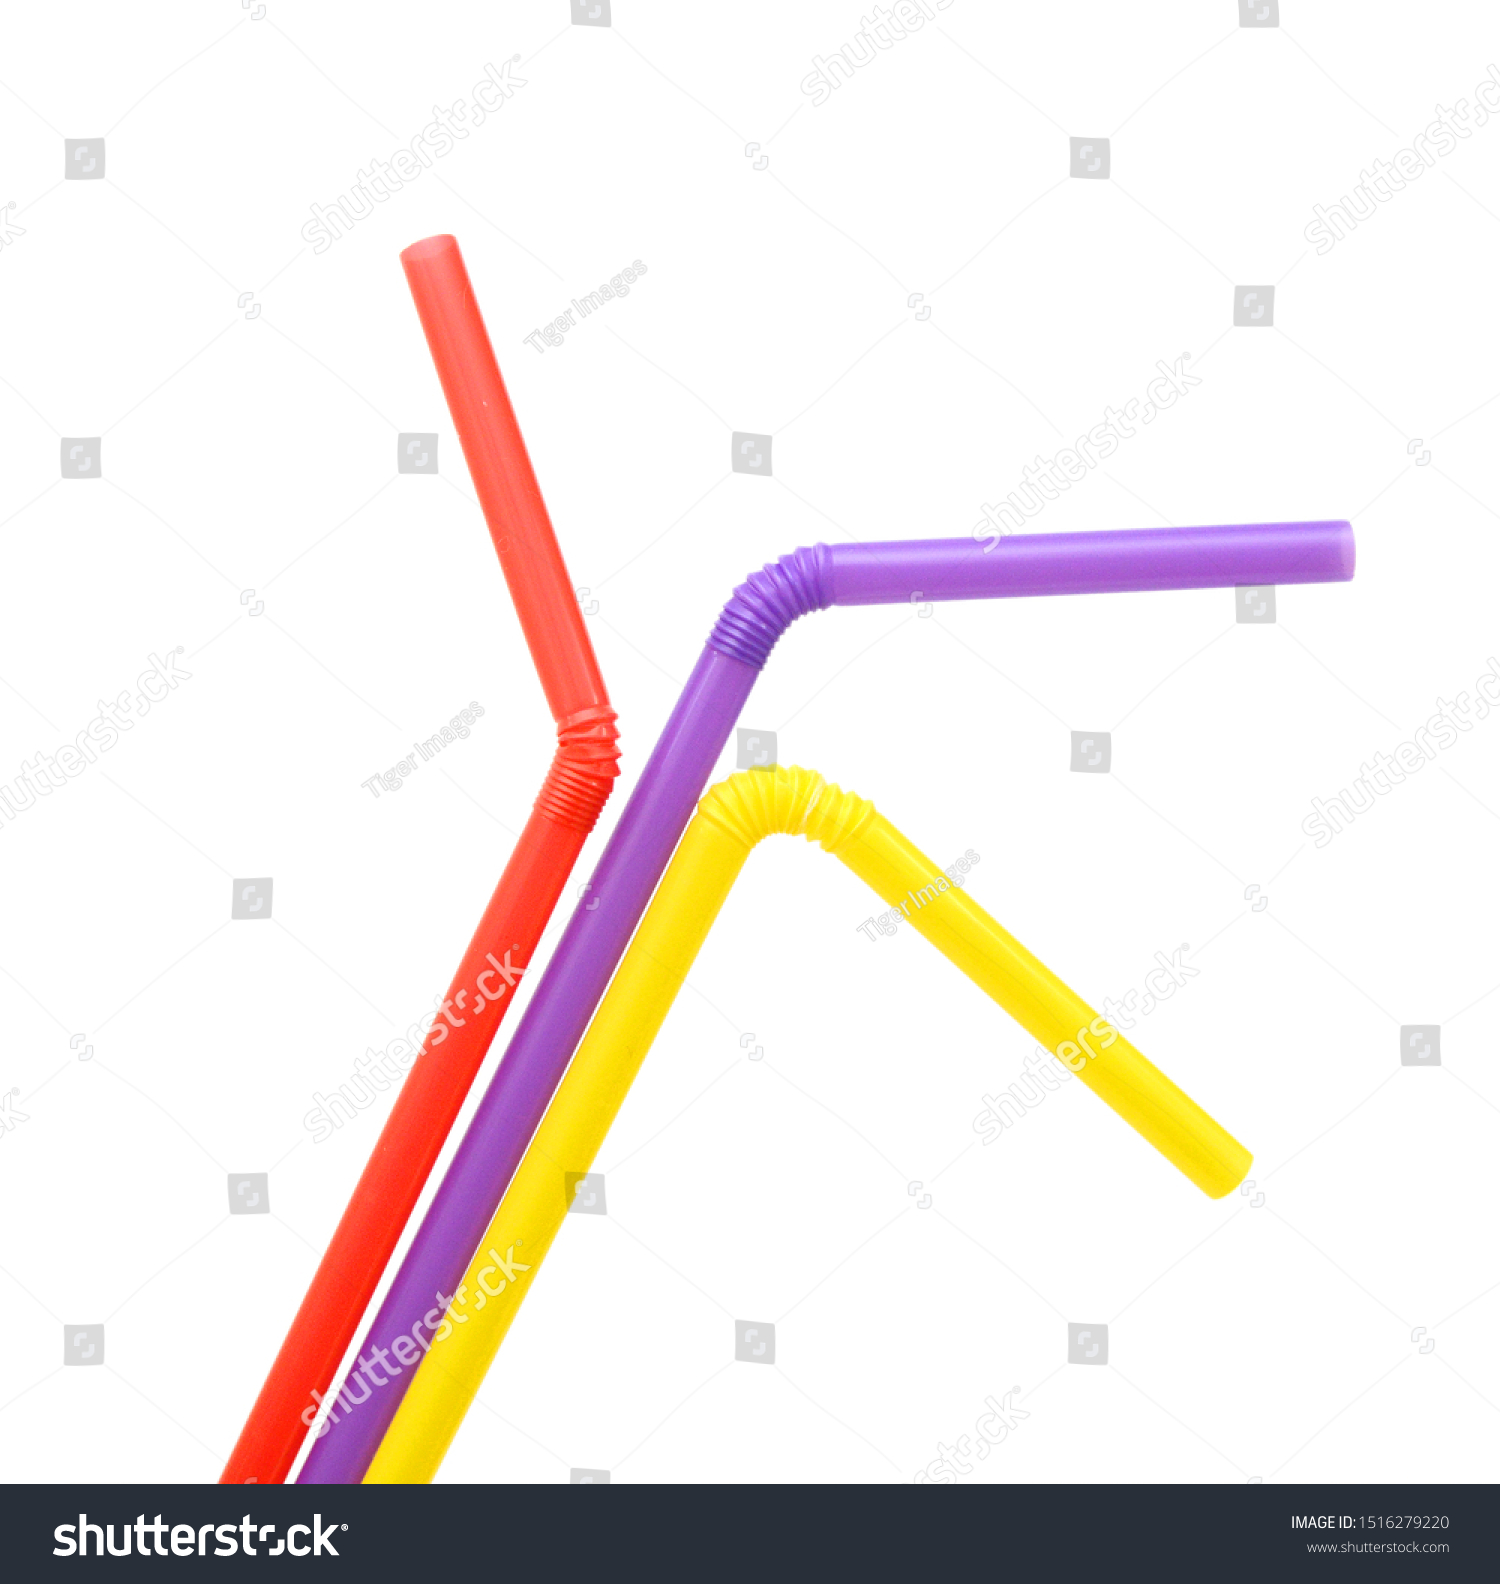 Straw plastic straw drink straw - Image  #1516279220